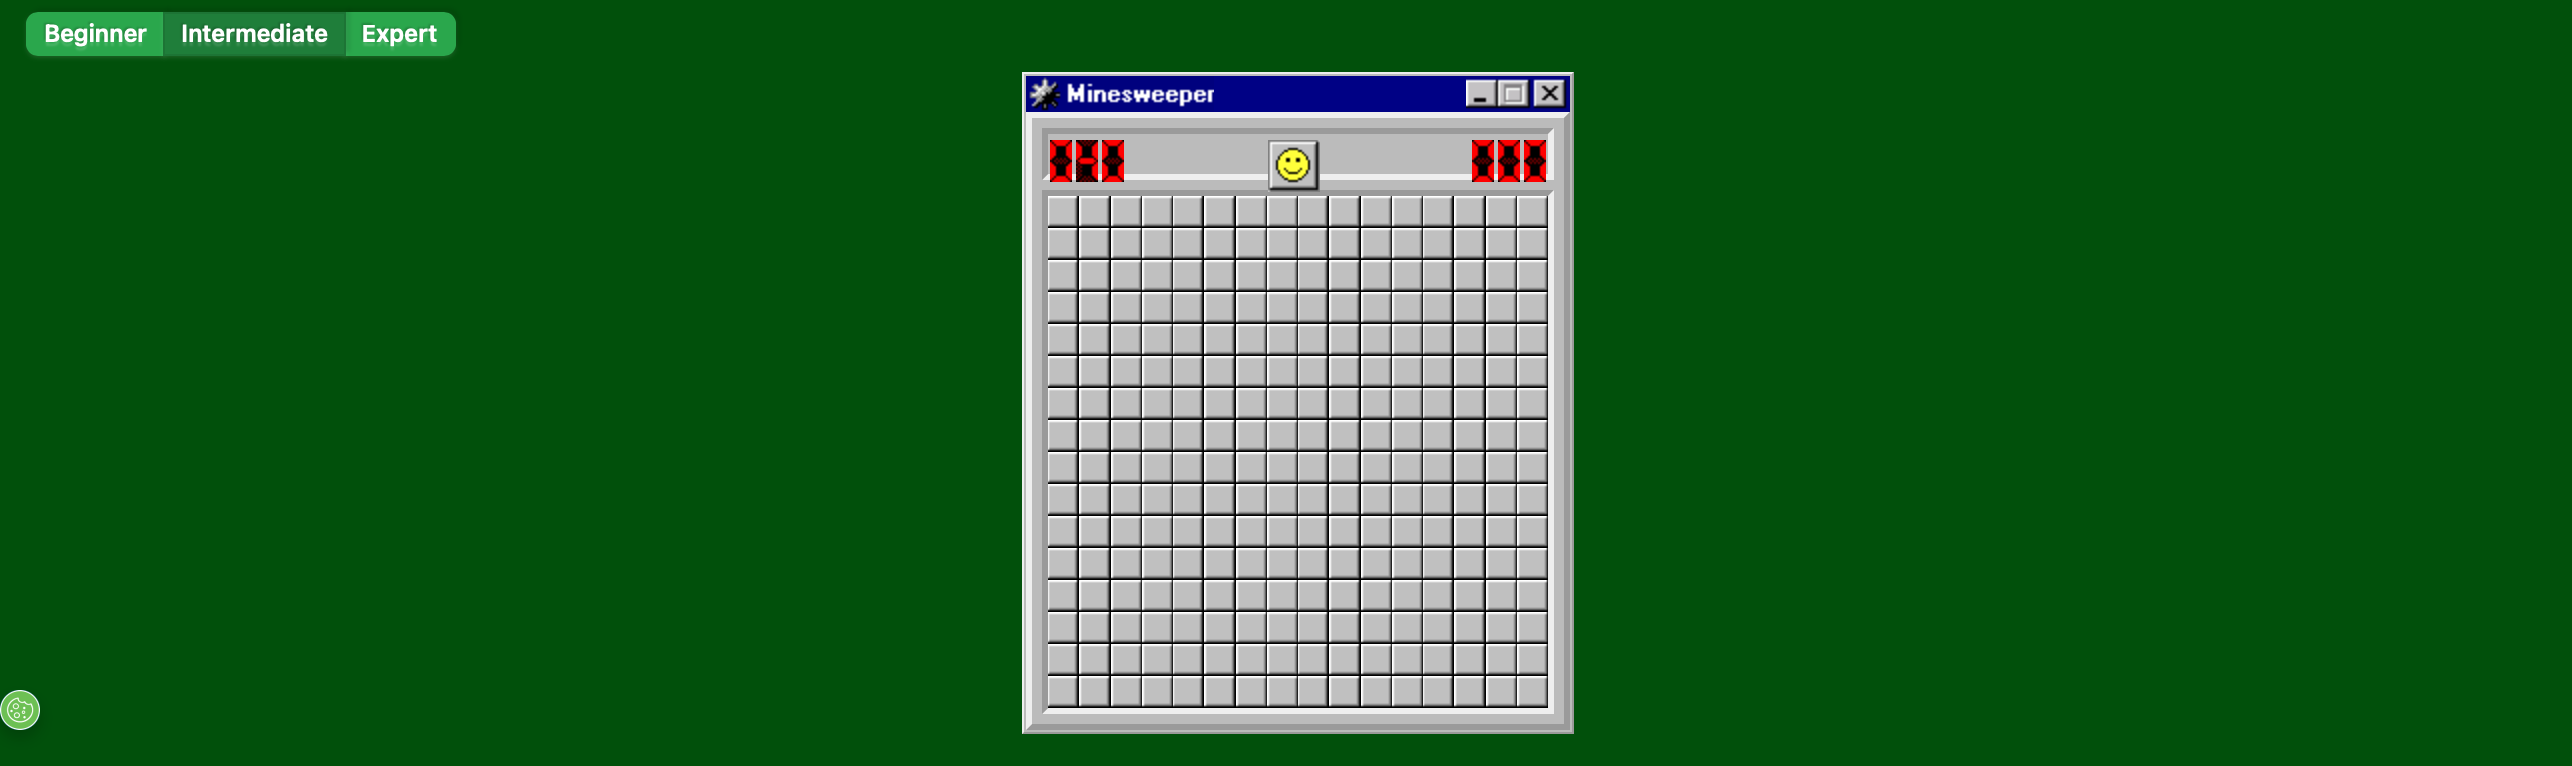 A screenshot of Minesweeper game.